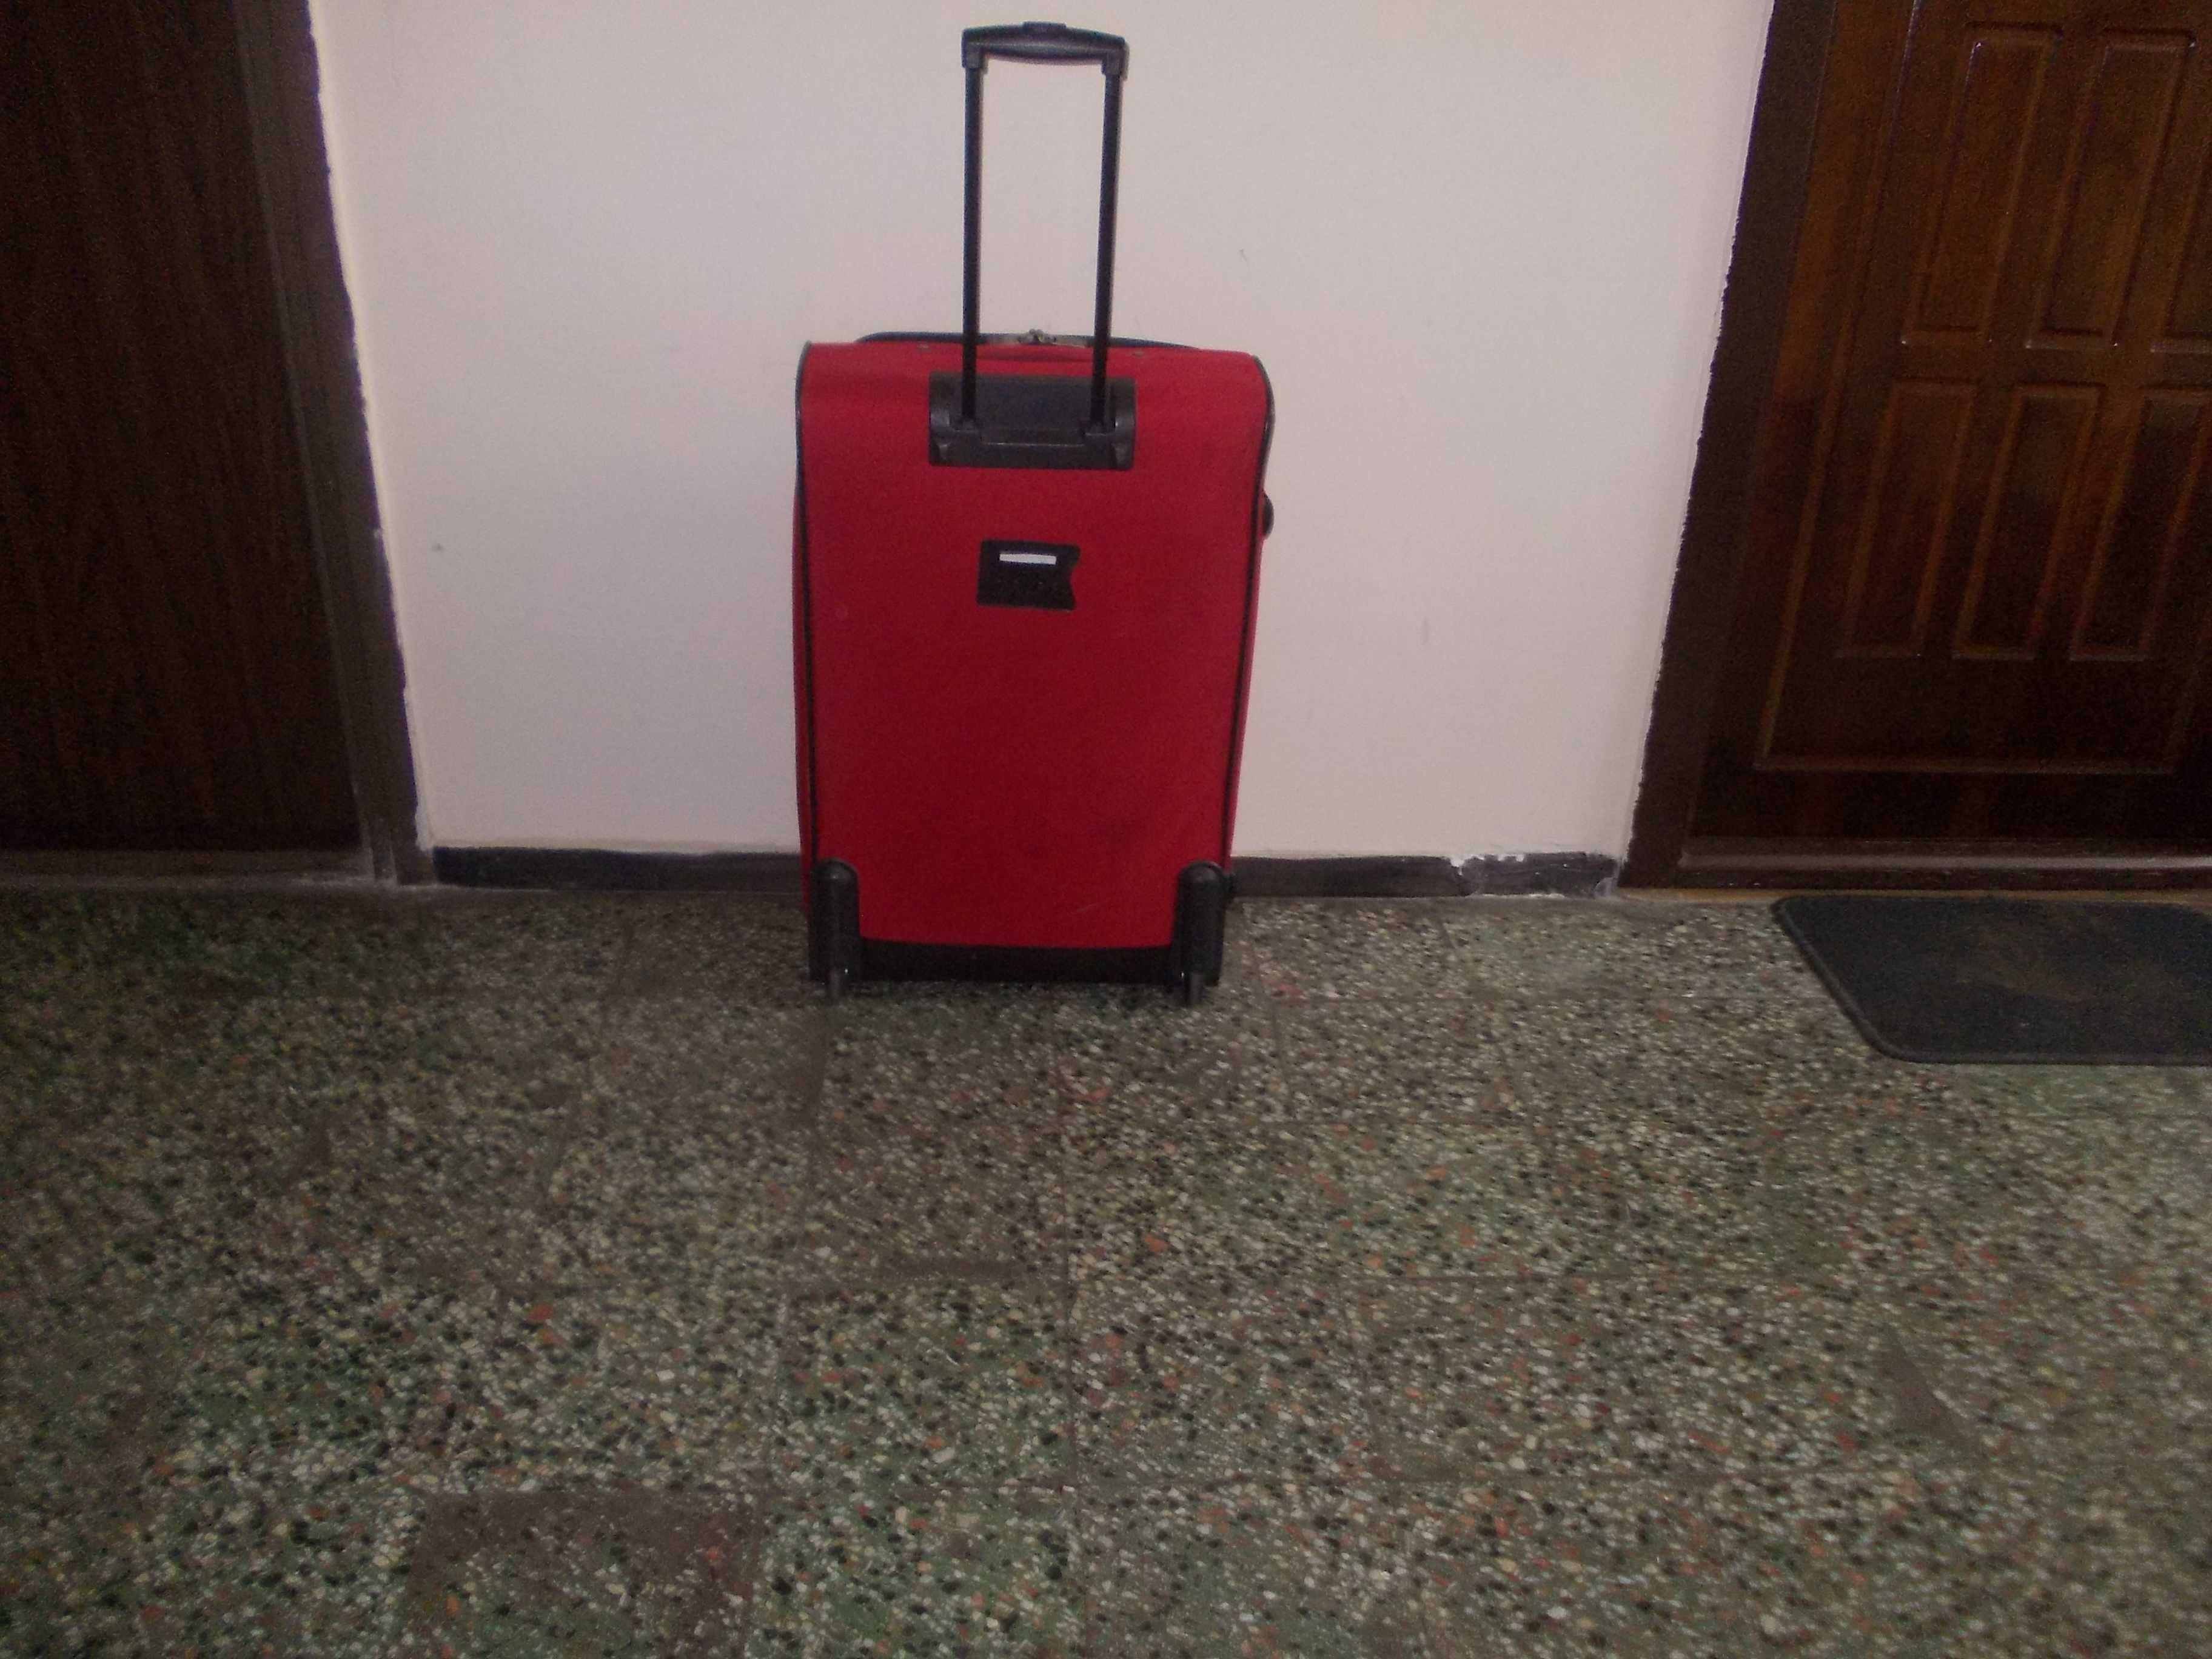 Troler mare 77/48 cu 2roti geamantan valiza geanta bagaj de cala avion